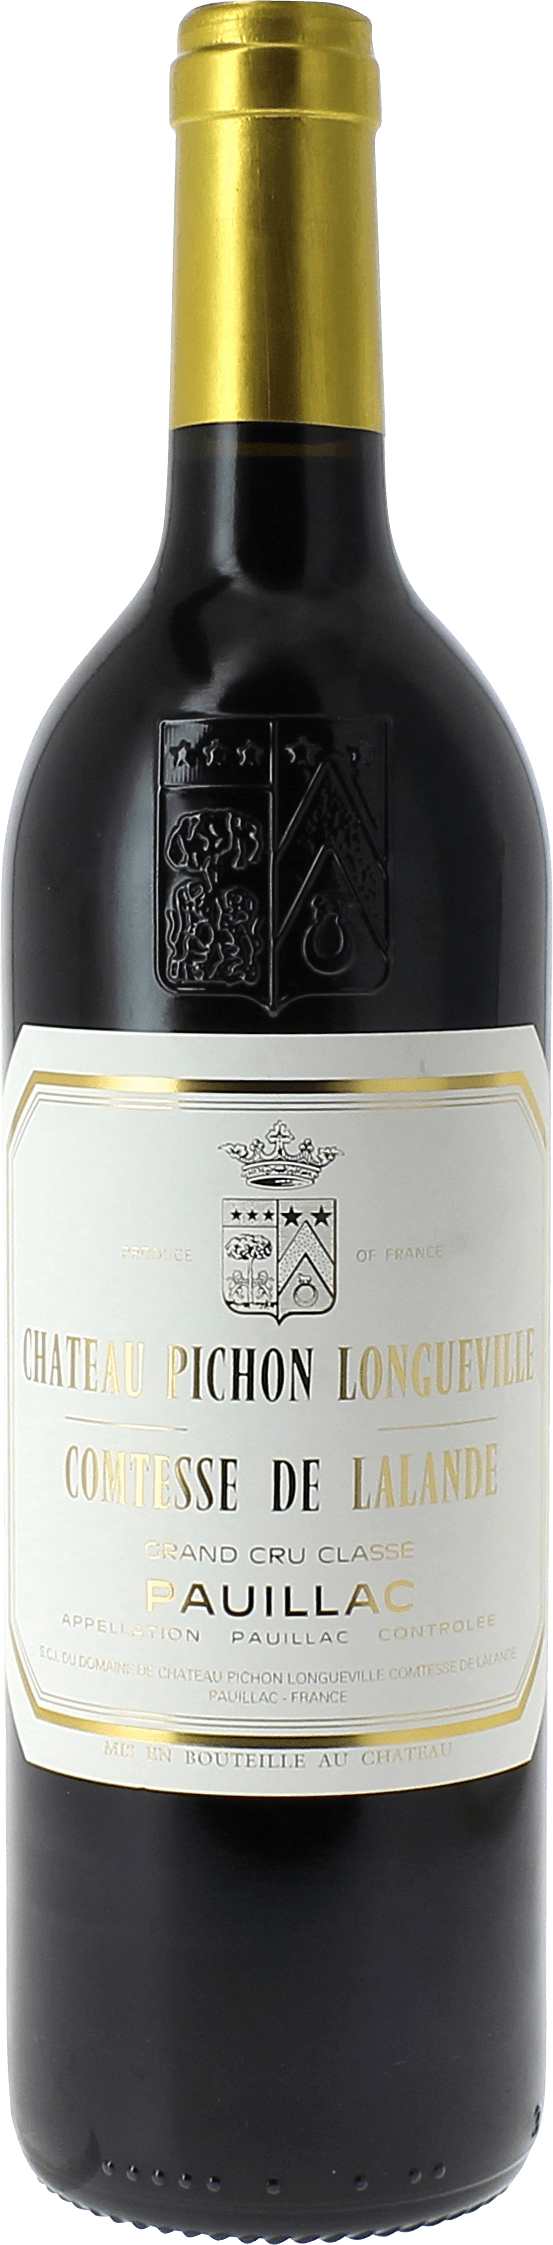 Pichon comtesse de lalande 1985 2me Grand cru class Pauillac, Bordeaux rouge